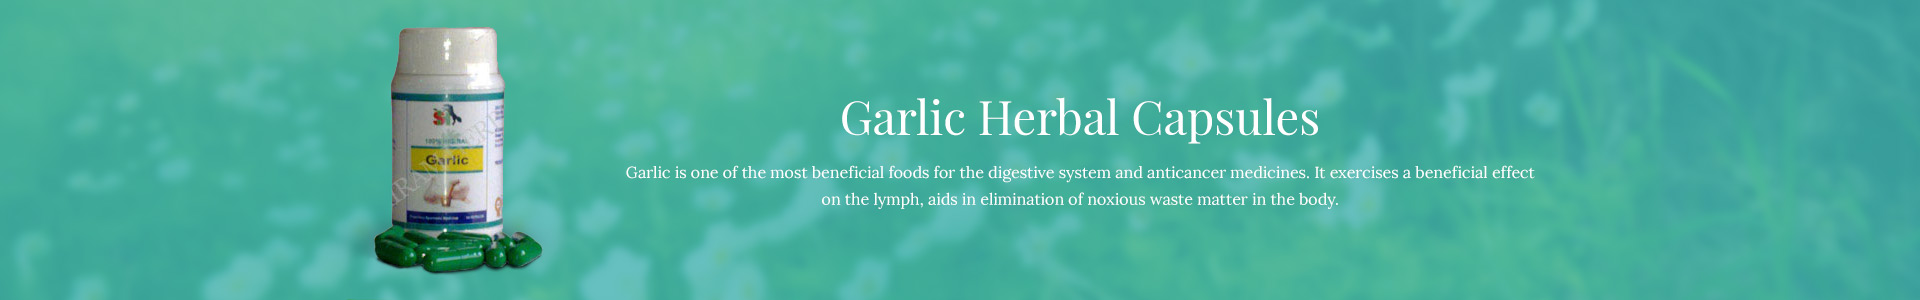 garlic-herbal-capsules